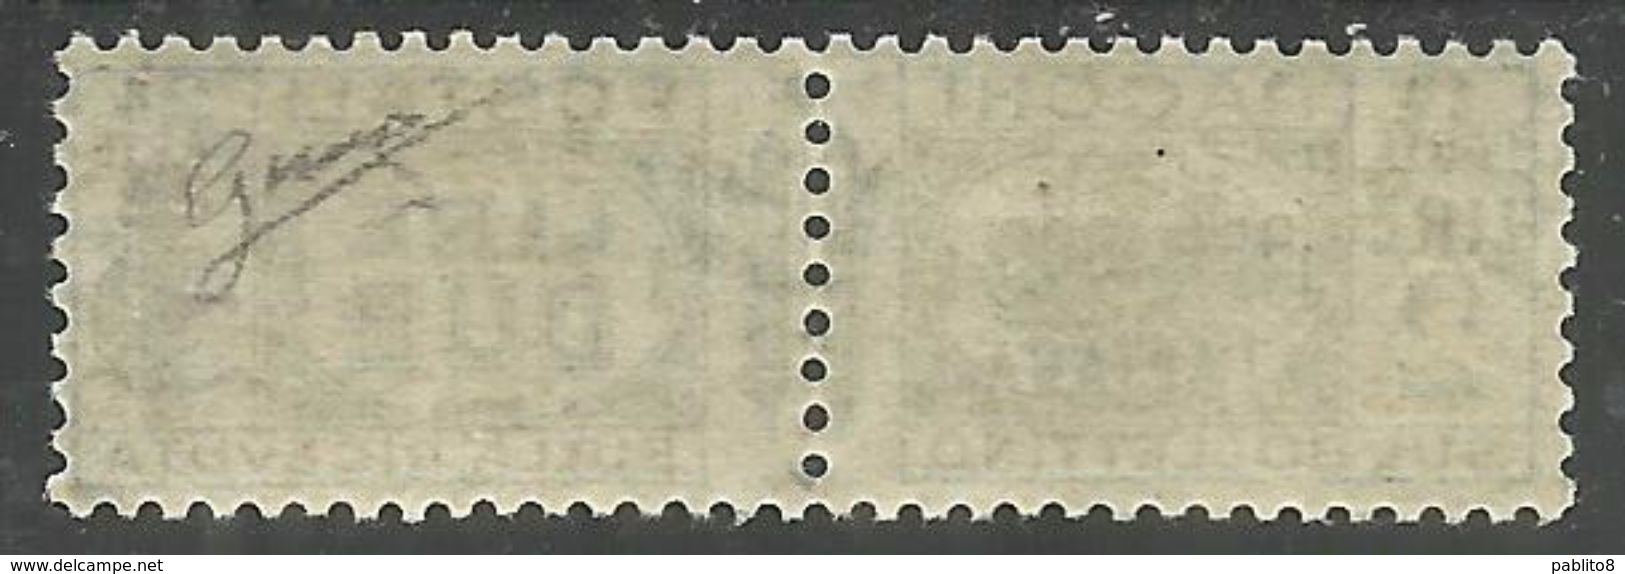 ITALIA REGNO ITALY KINGDOM 1944 RSI REPUBBLICA SOCIALE PACCHI FASCIETTO LIRE 2 MNH FIRMATO SIGNED - Postal Parcels